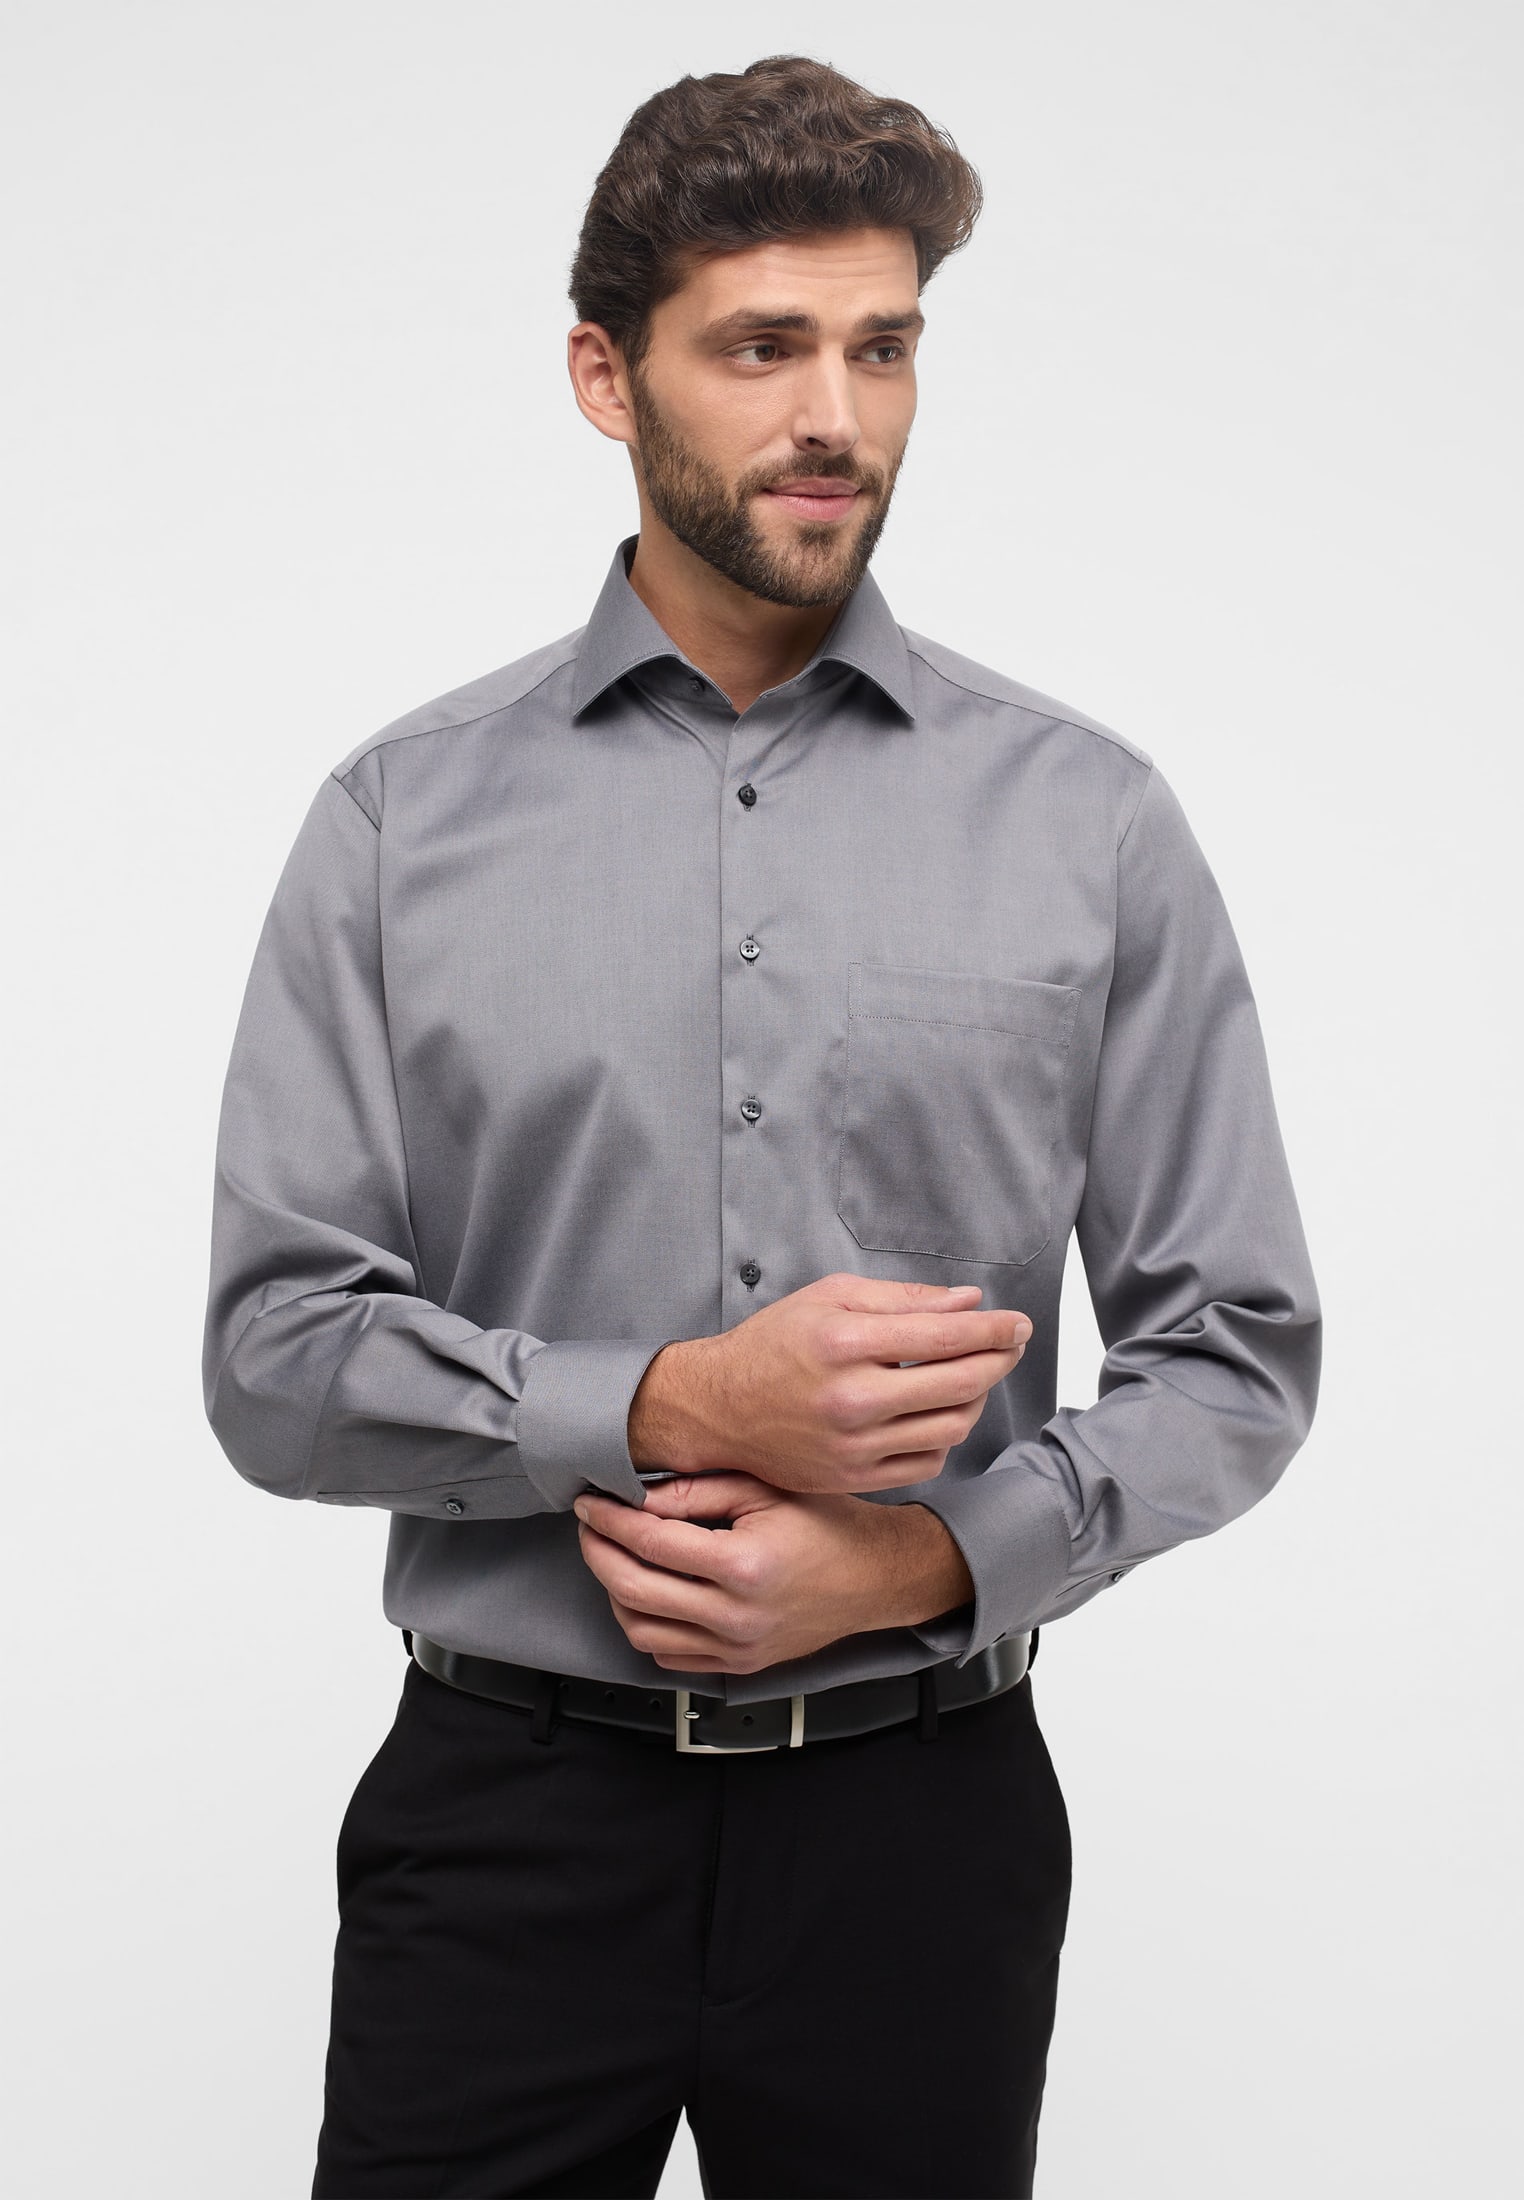 COMFORT FIT Cover Shirt in grau unifarben | grau | 41 | Langarm |  1SH05506-03-01-41-1/1